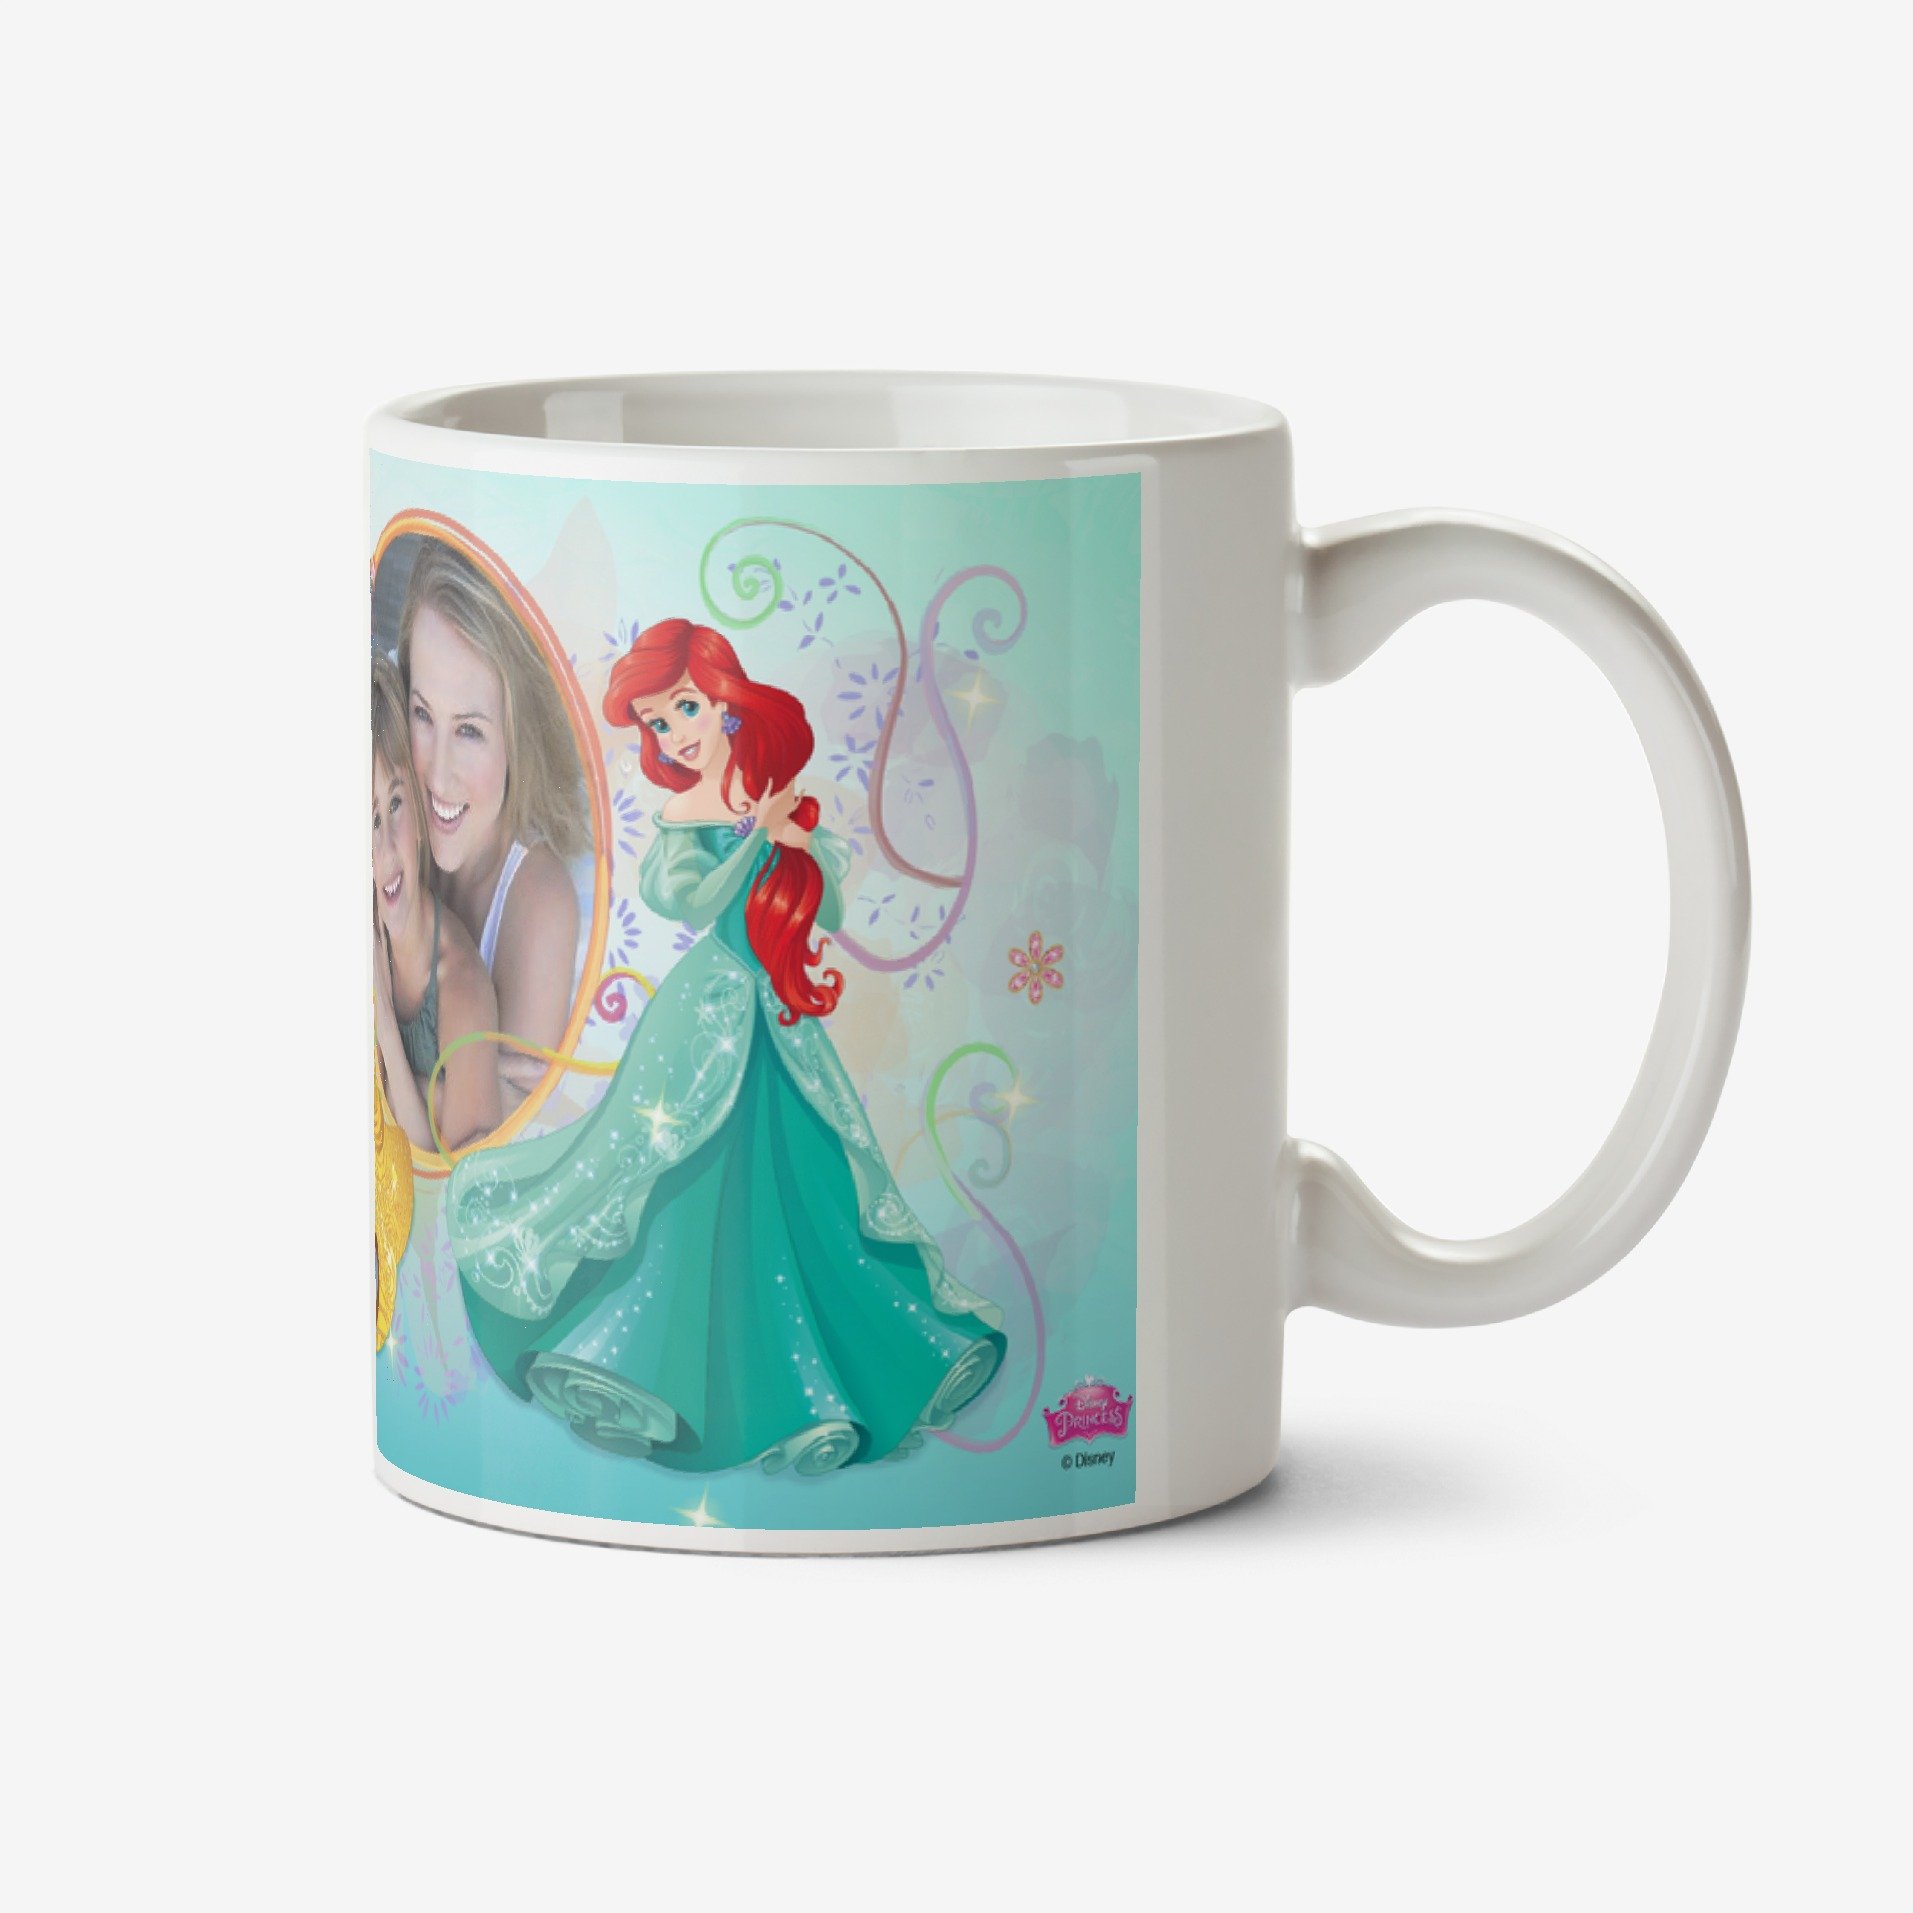 Disney Princesses Disney Princess Collection Blue Photo Upload Mug Ceramic Mug